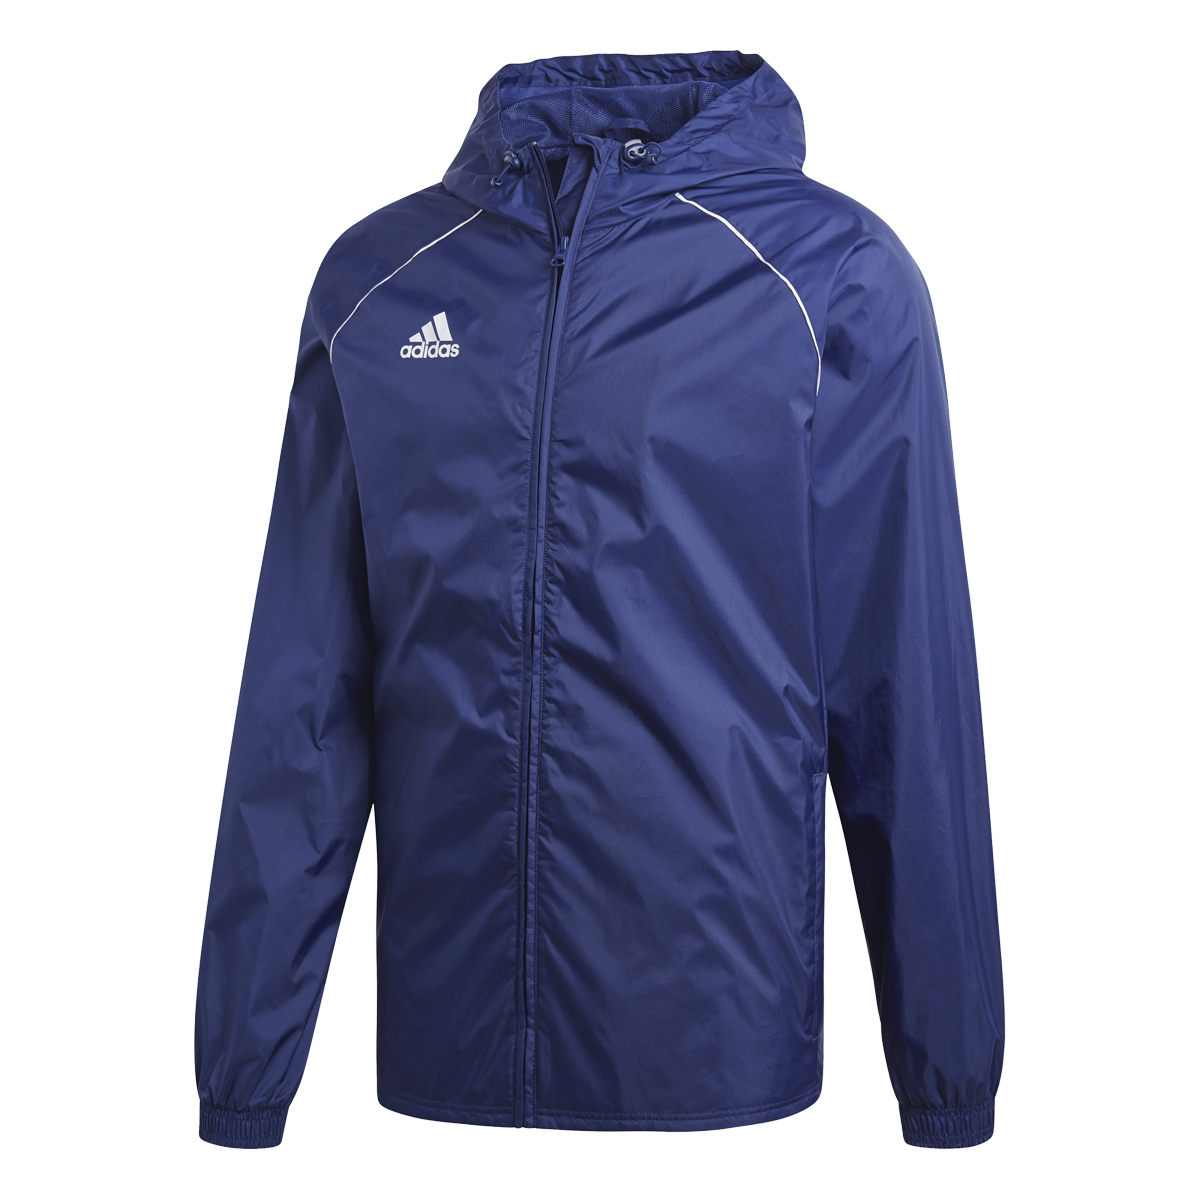 Adidas Core 18 Rain Jacket tmavě modrá UK S Pánské